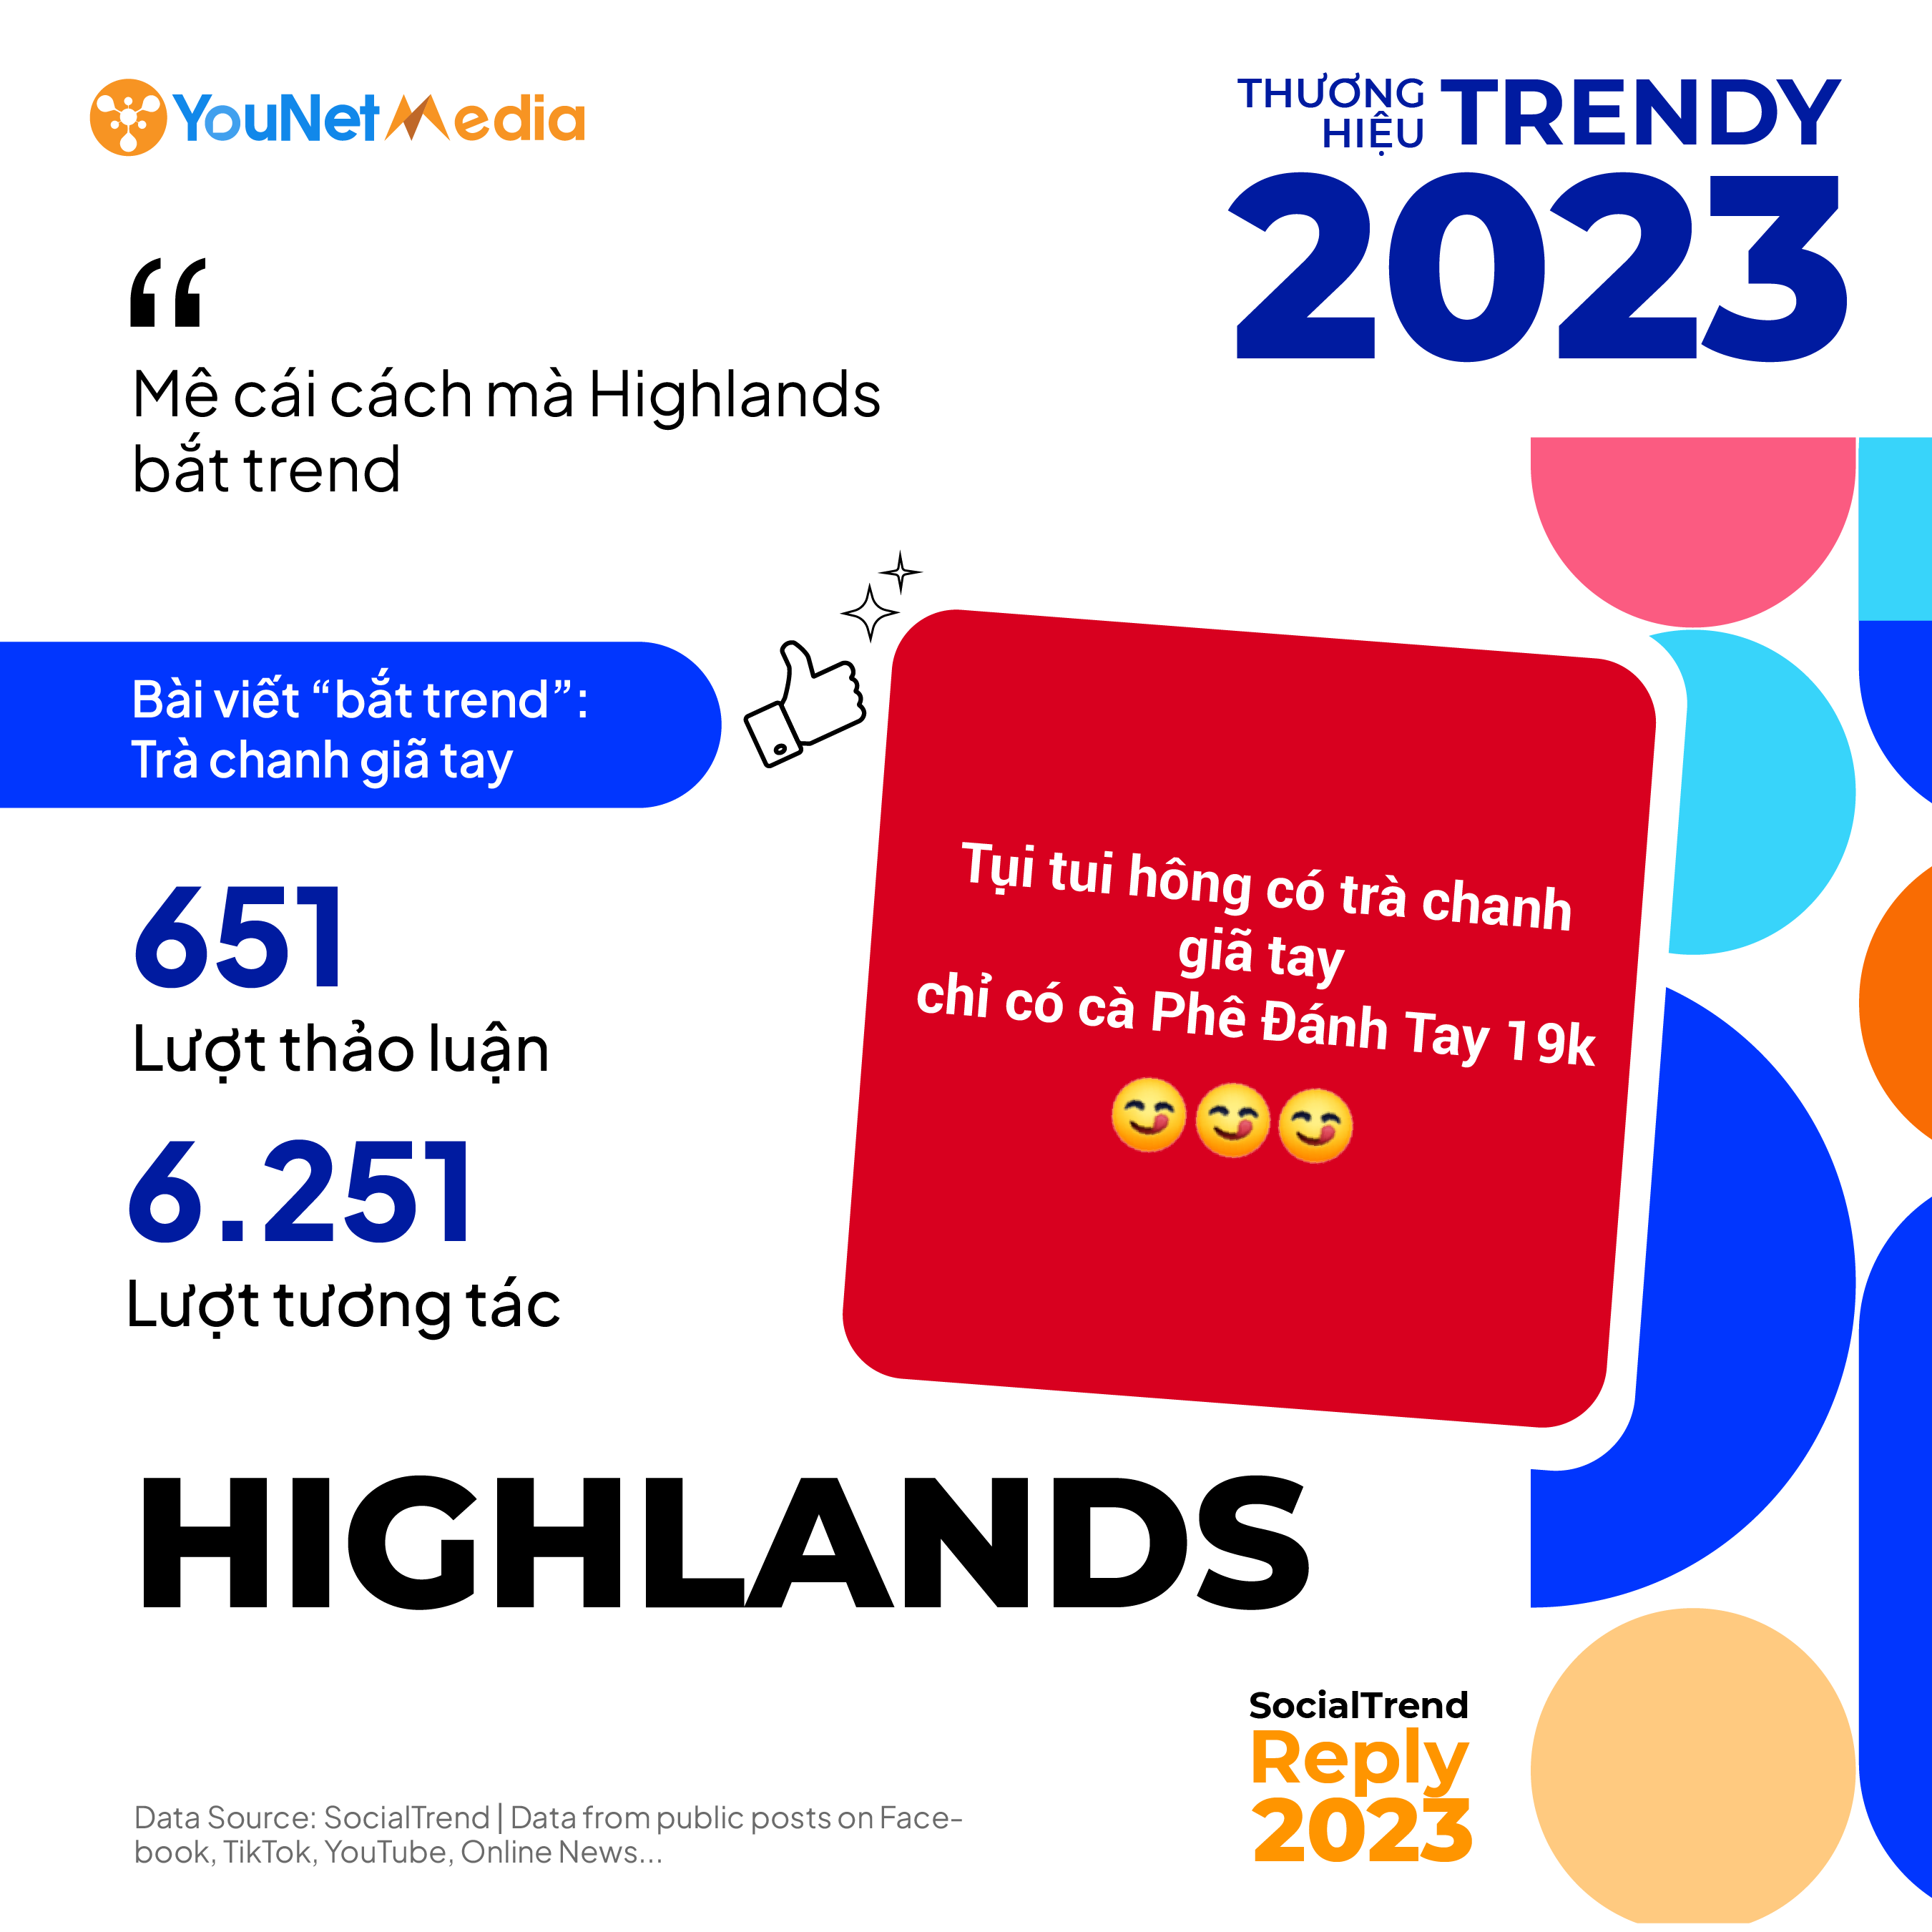 brandstrendy_highlands